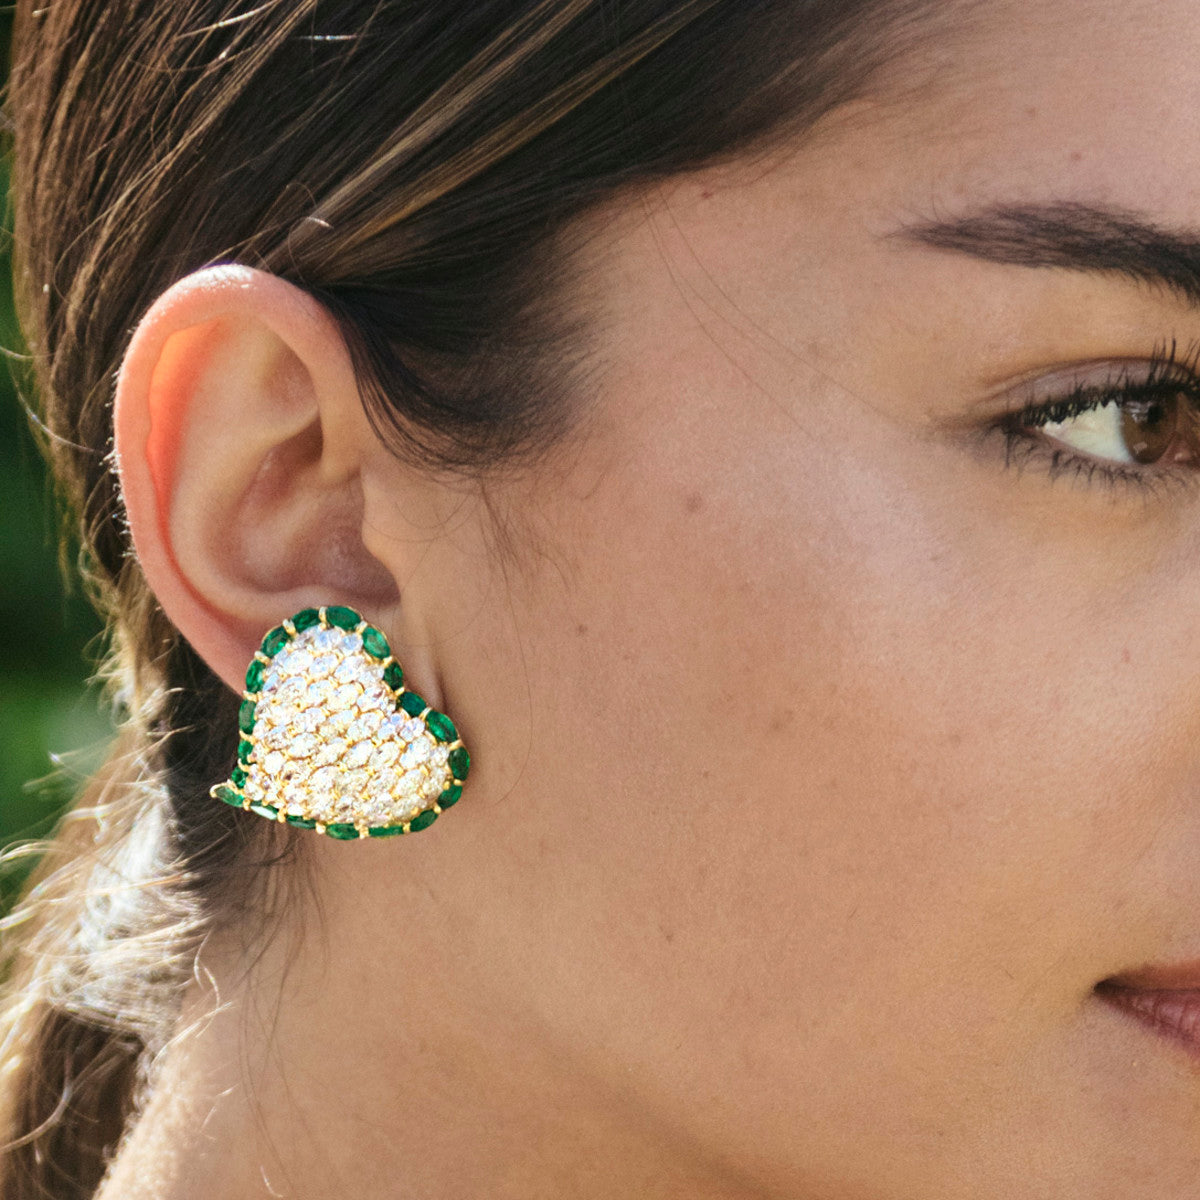 Moussaieff 1980s 18KT Yellow Gold Diamond & Emerald Heart Earrings worn on ear